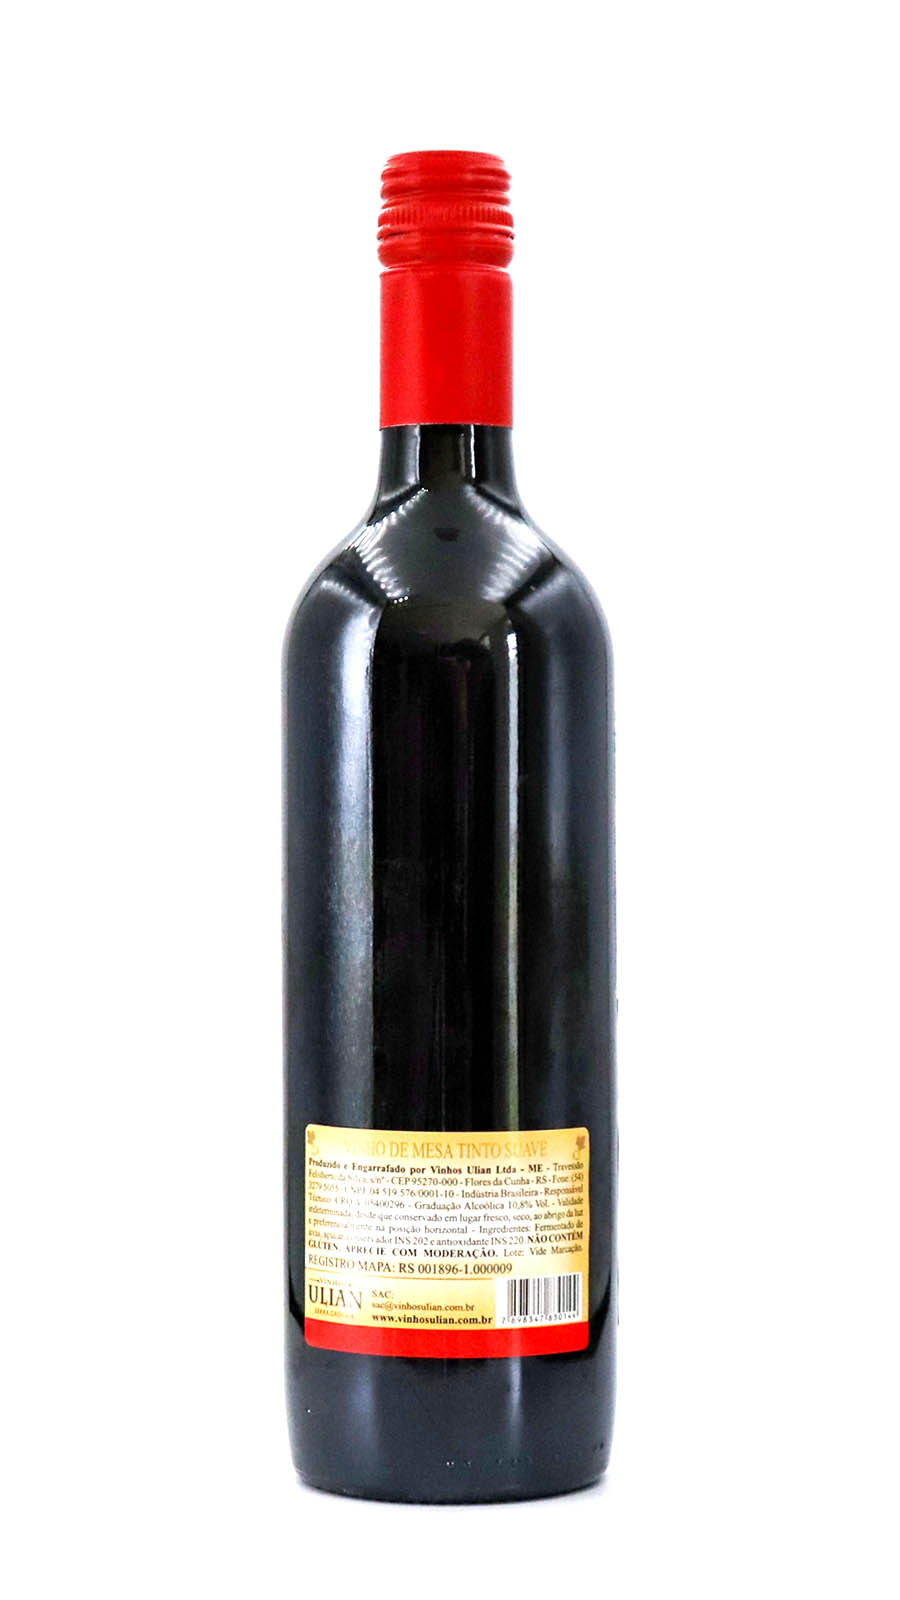 imagem Vinho de Mesa Tinto Suave Ulian 1